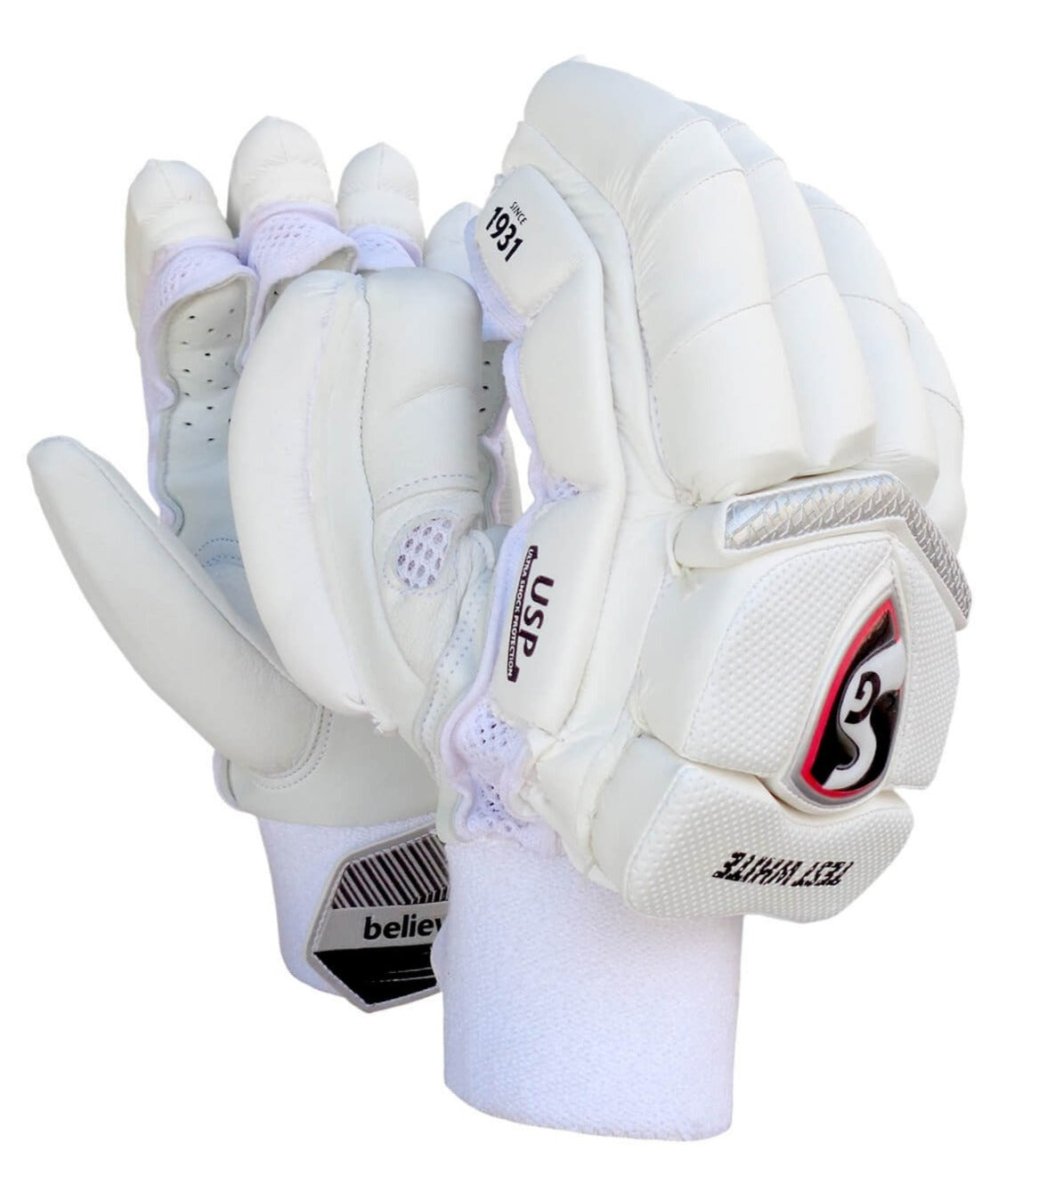 SG Test White Cricket Batting Gloves.